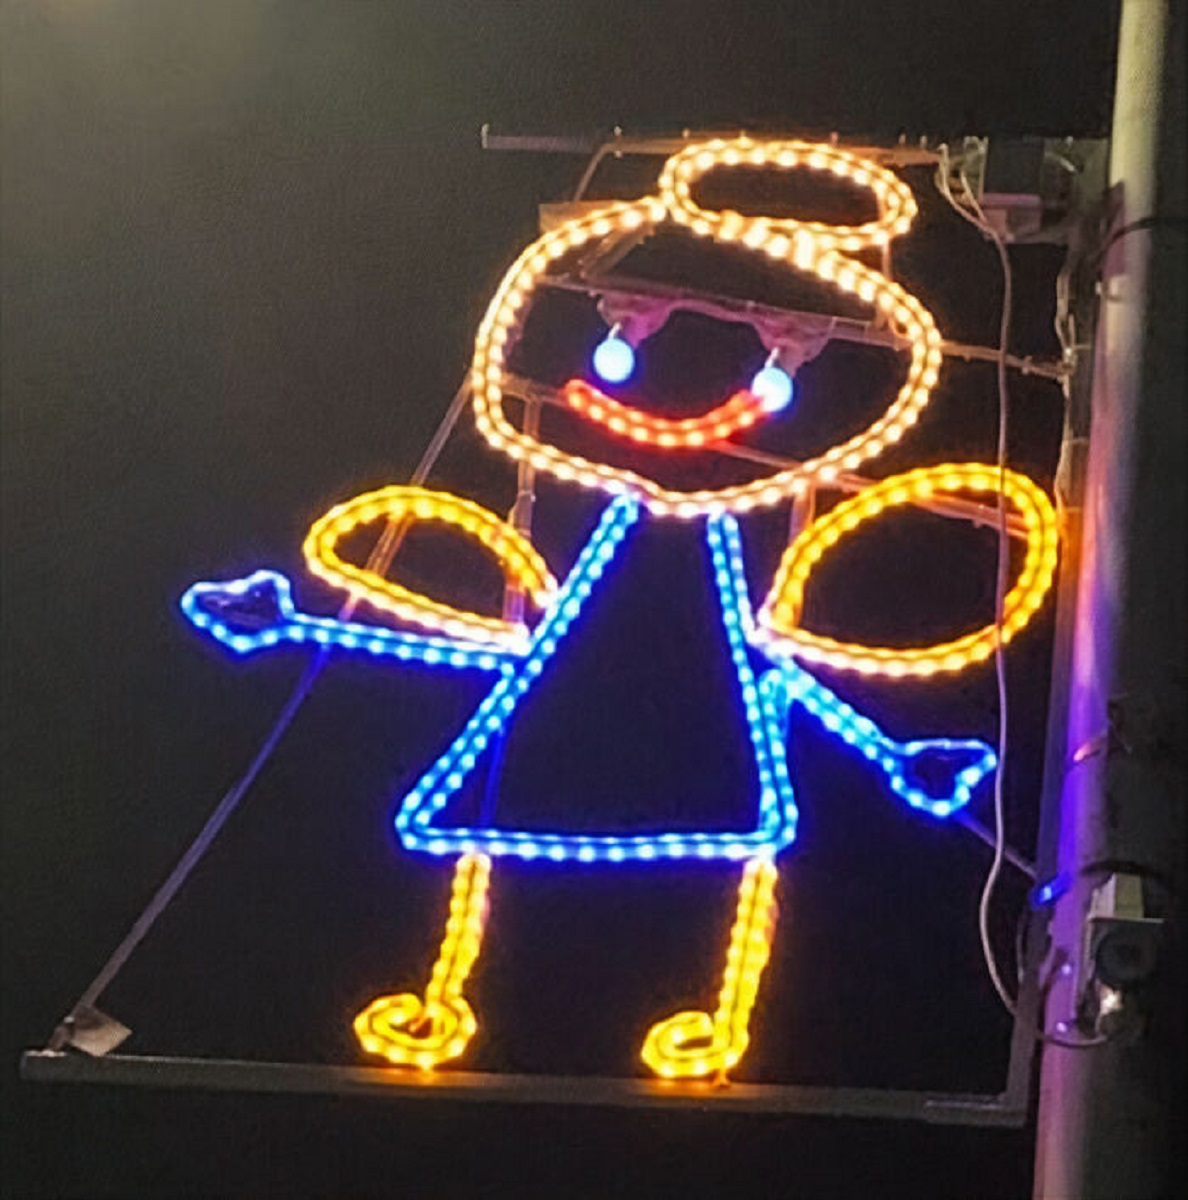 Na Escocia as criancas projetam suas luzes de Natal e resultado e adoravel 6